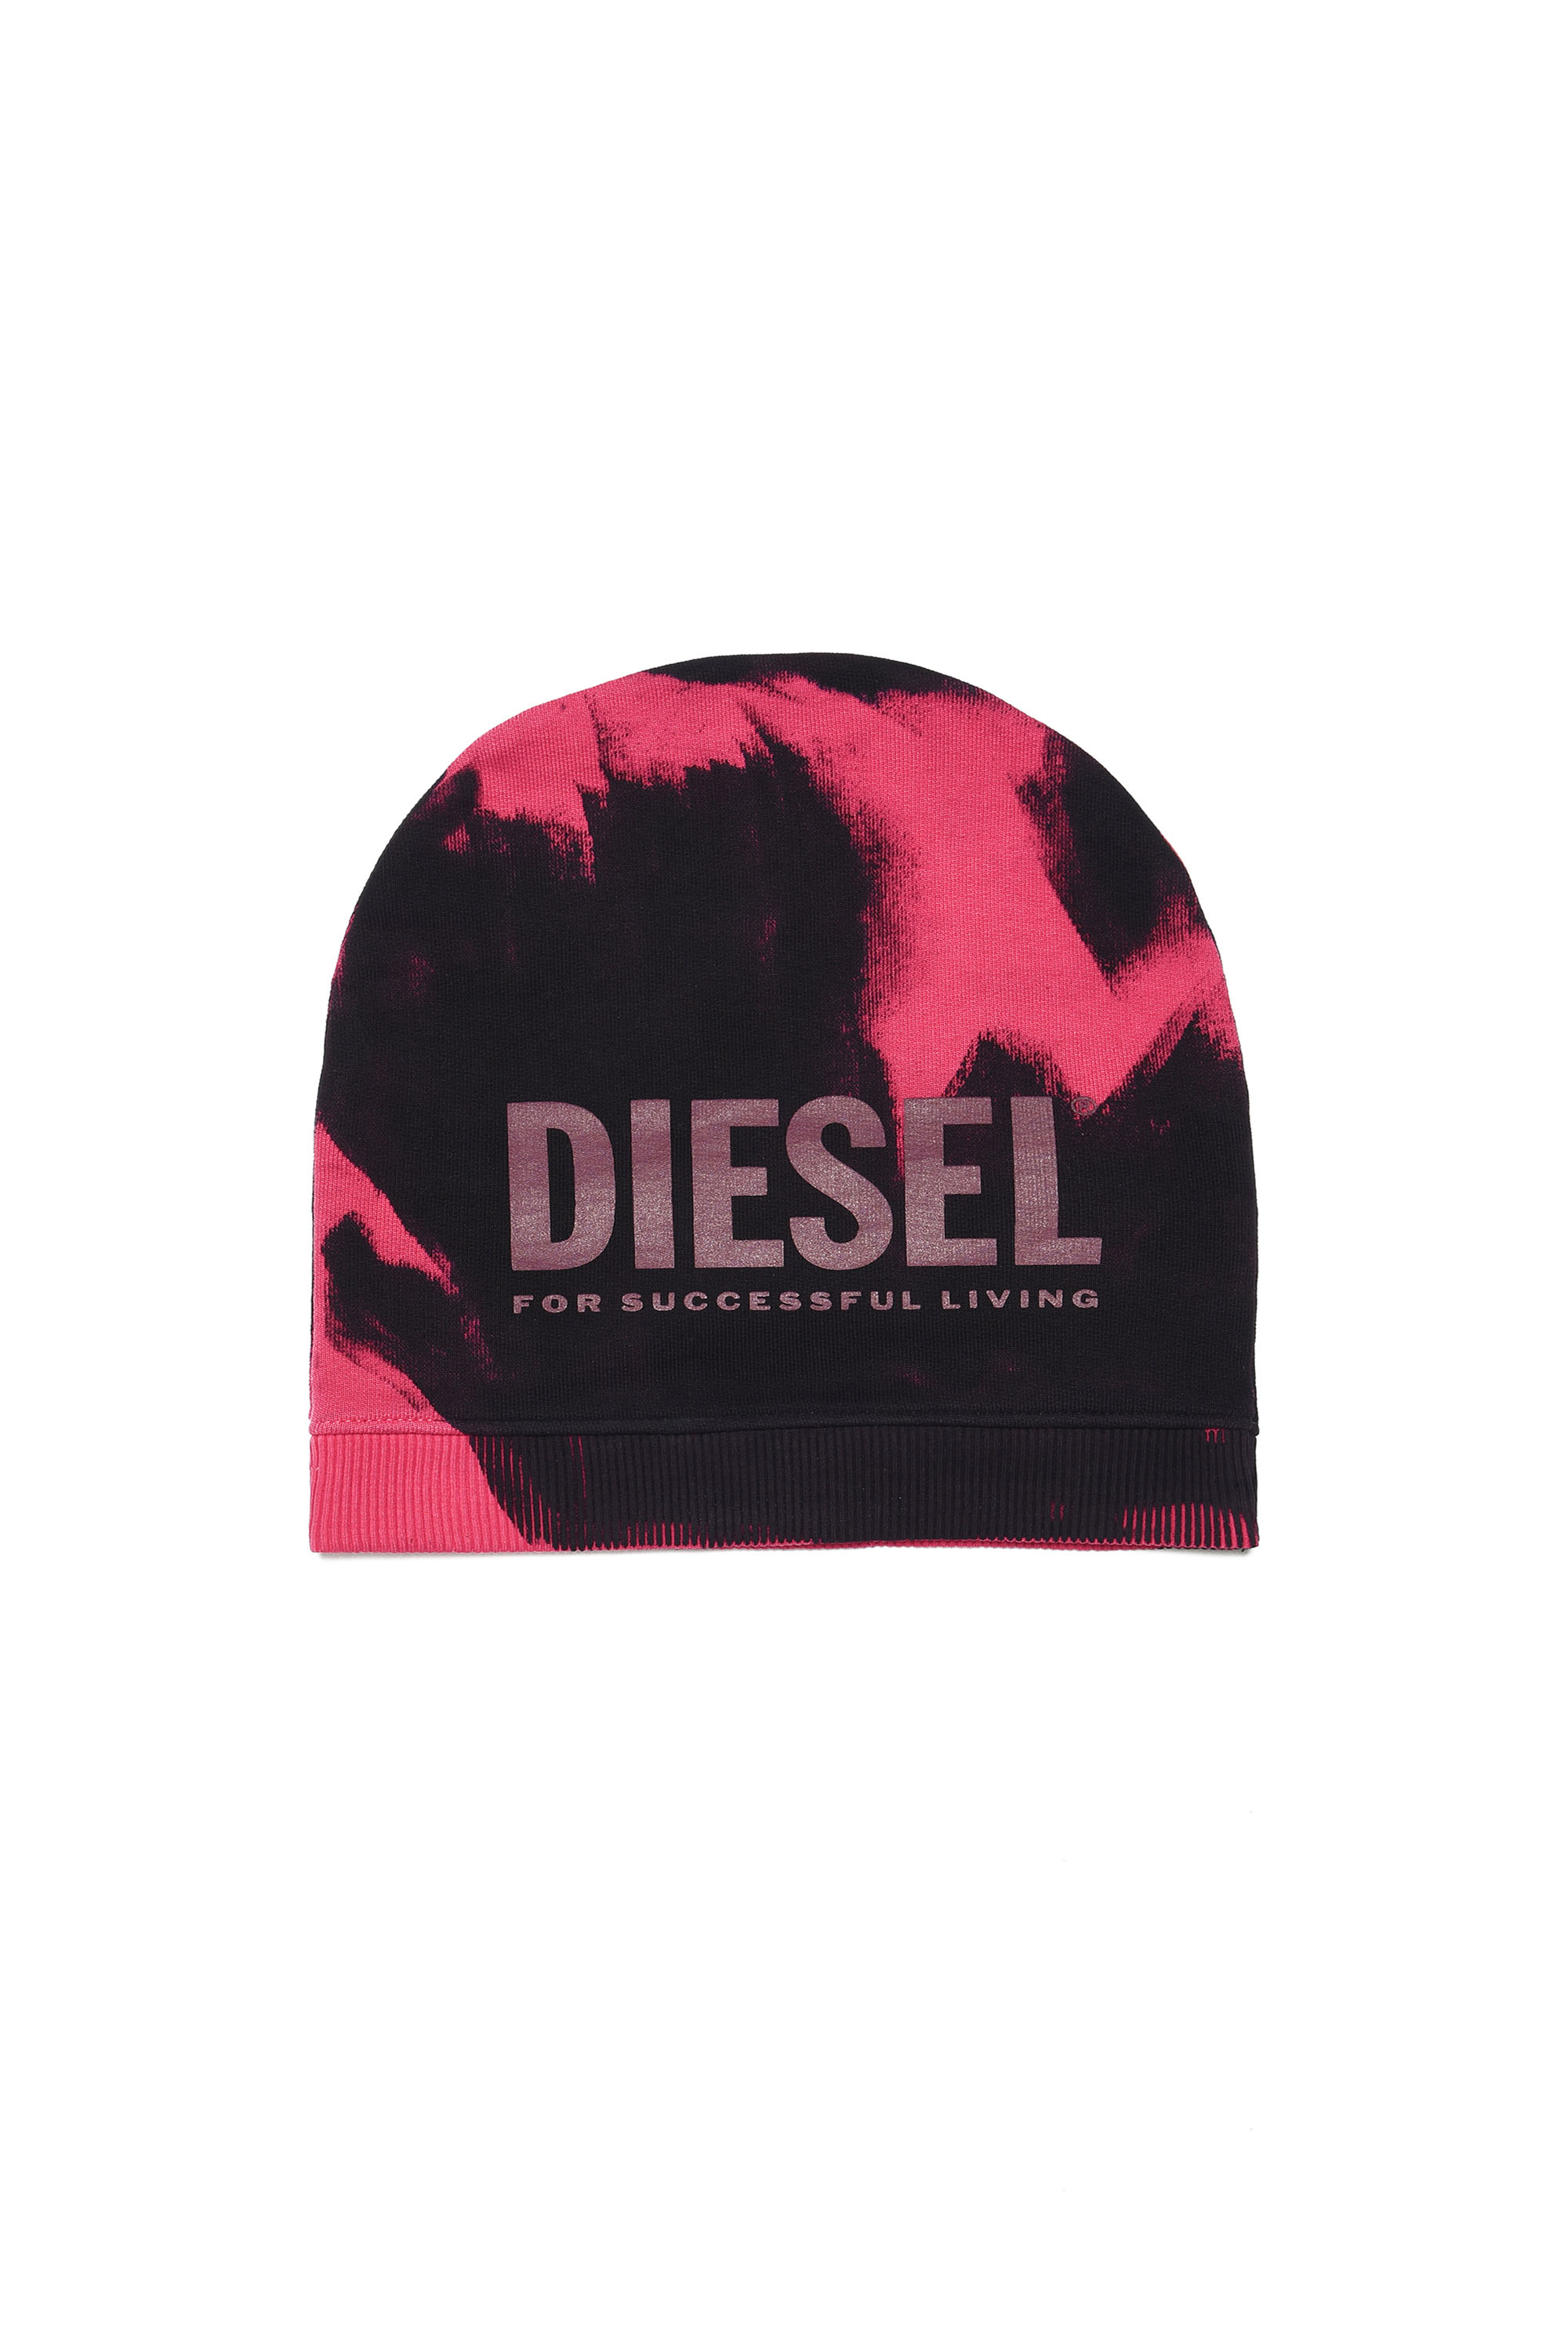 Diesel - FEDYM, Black/Pink - Image 1